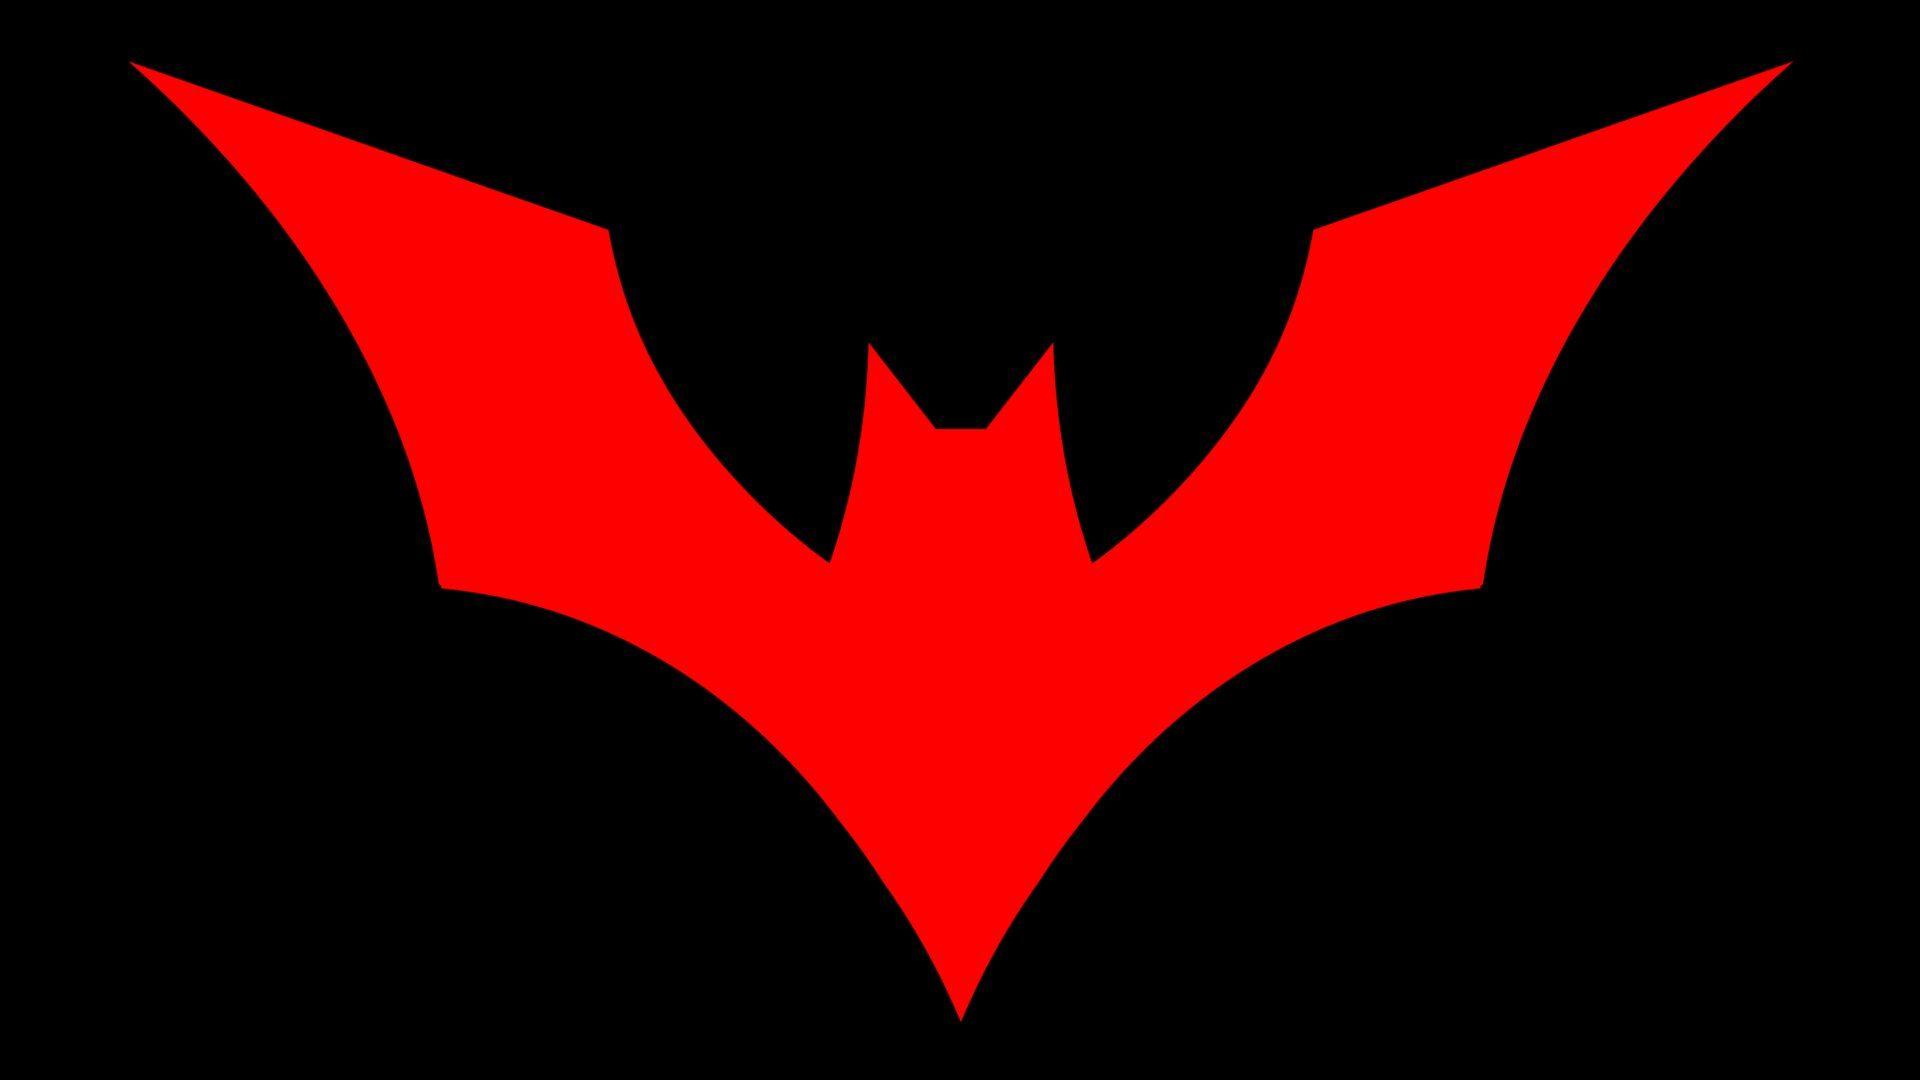 Batman Beyond Logo Wallpapers - Top Free Batman Beyond Logo Backgrounds -  WallpaperAccess